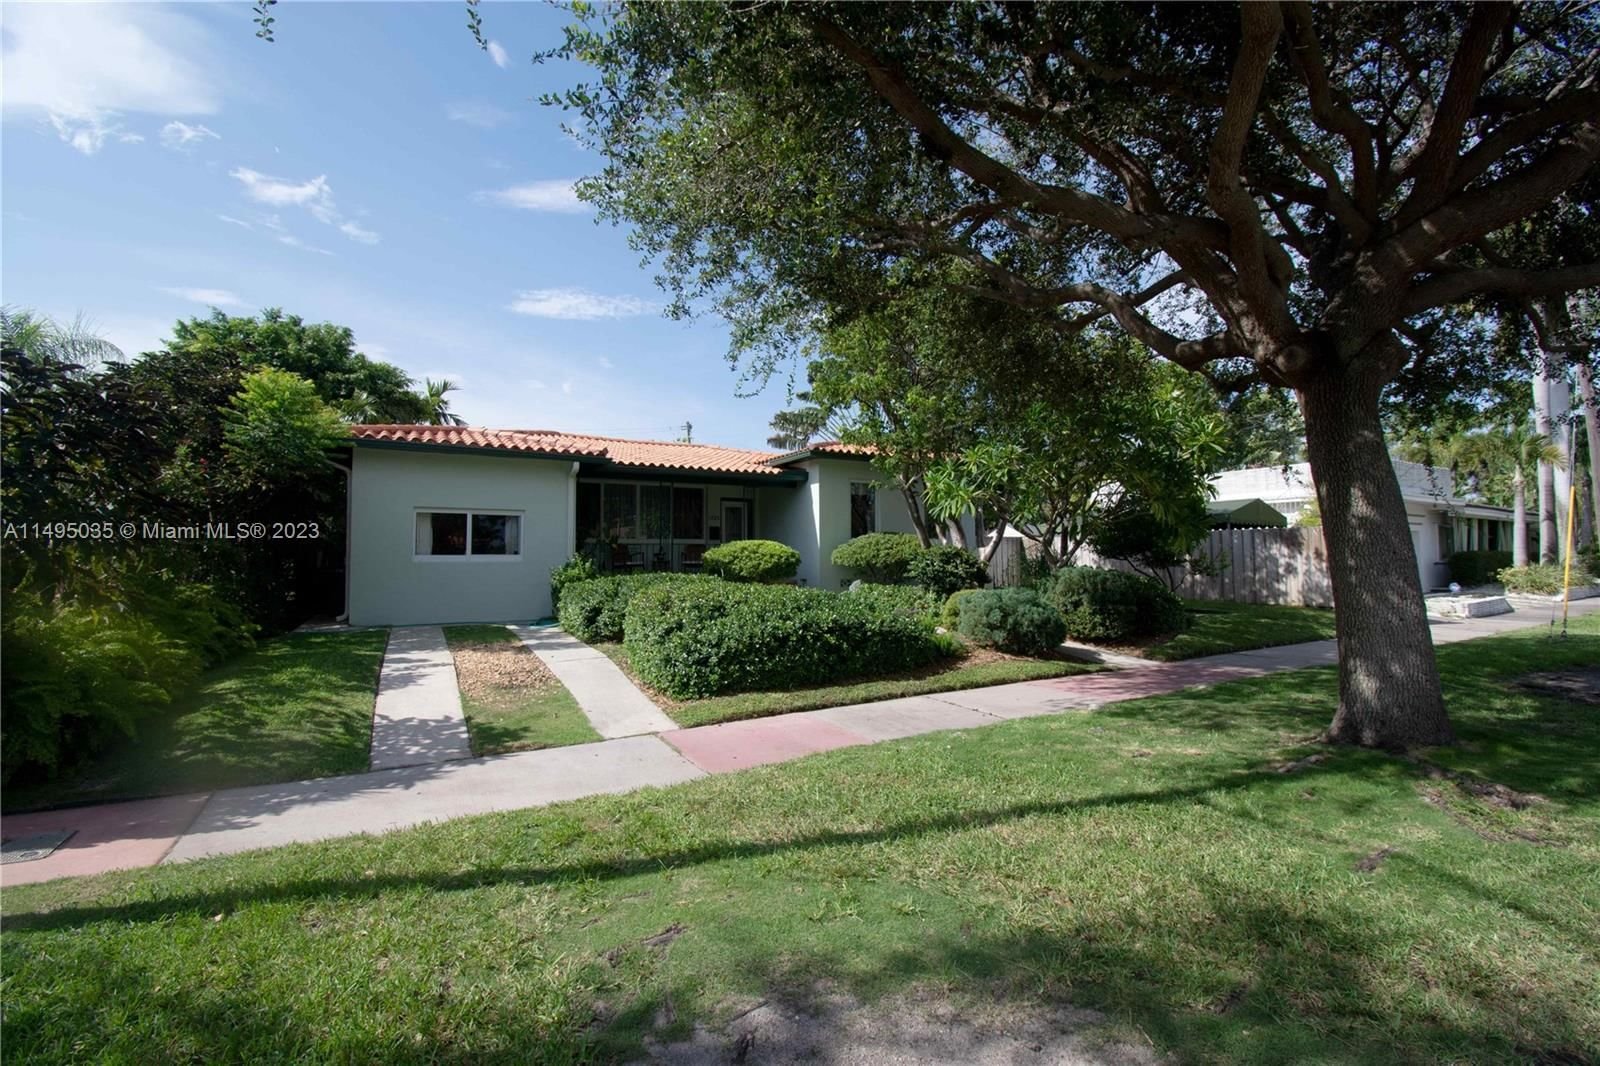 Real estate property located at 1725 Biarritz Dr, Miami-Dade County, ISLE OF NORMANDY MIAMI VI, Miami Beach, FL